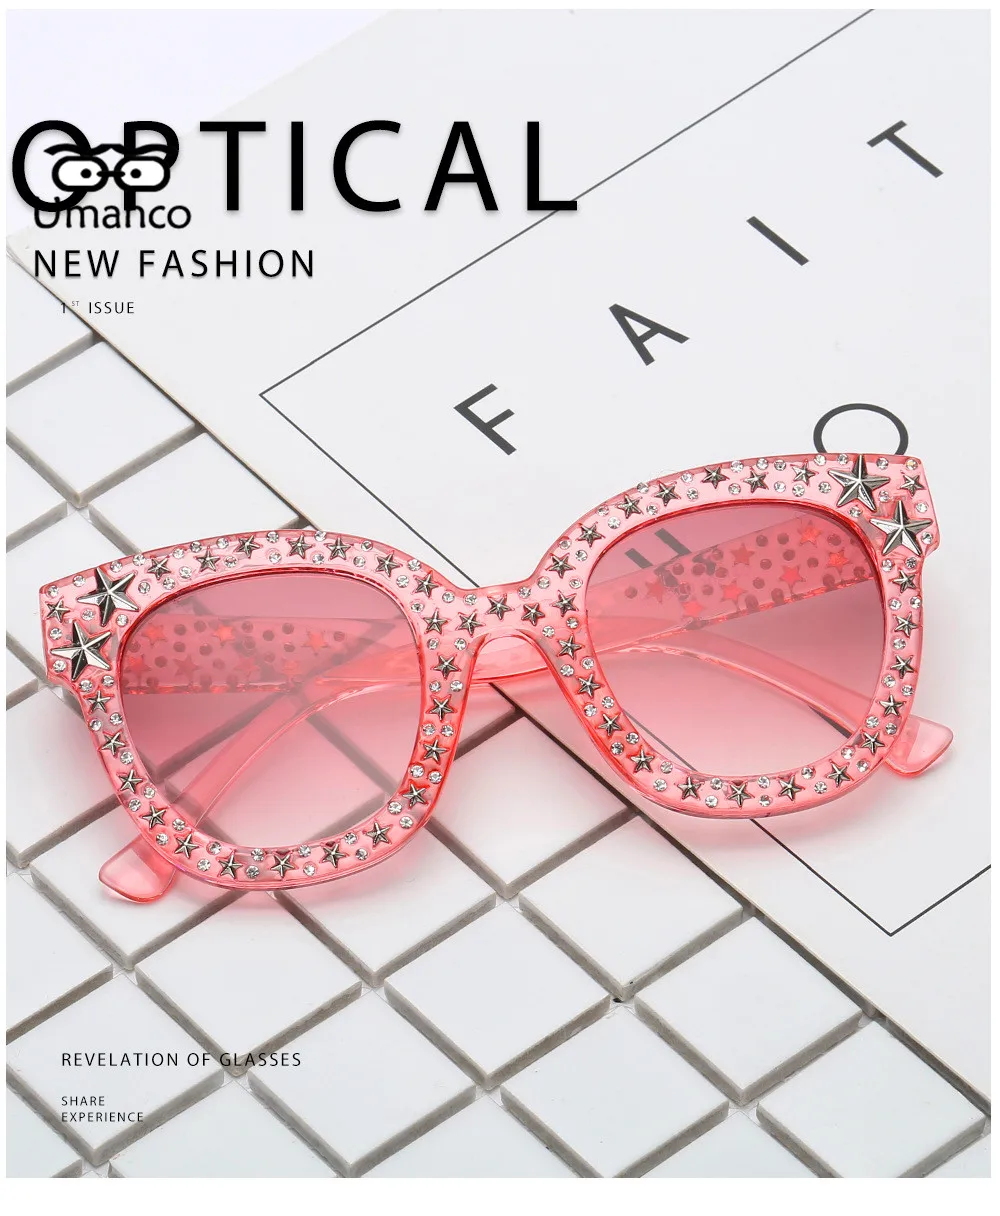 Umanco НОВЫЕ шикарные Звездные Солнцезащитные очки со стразами, женские зеркальные круглые линзы, брендовые дизайнерские модные дорожные очки